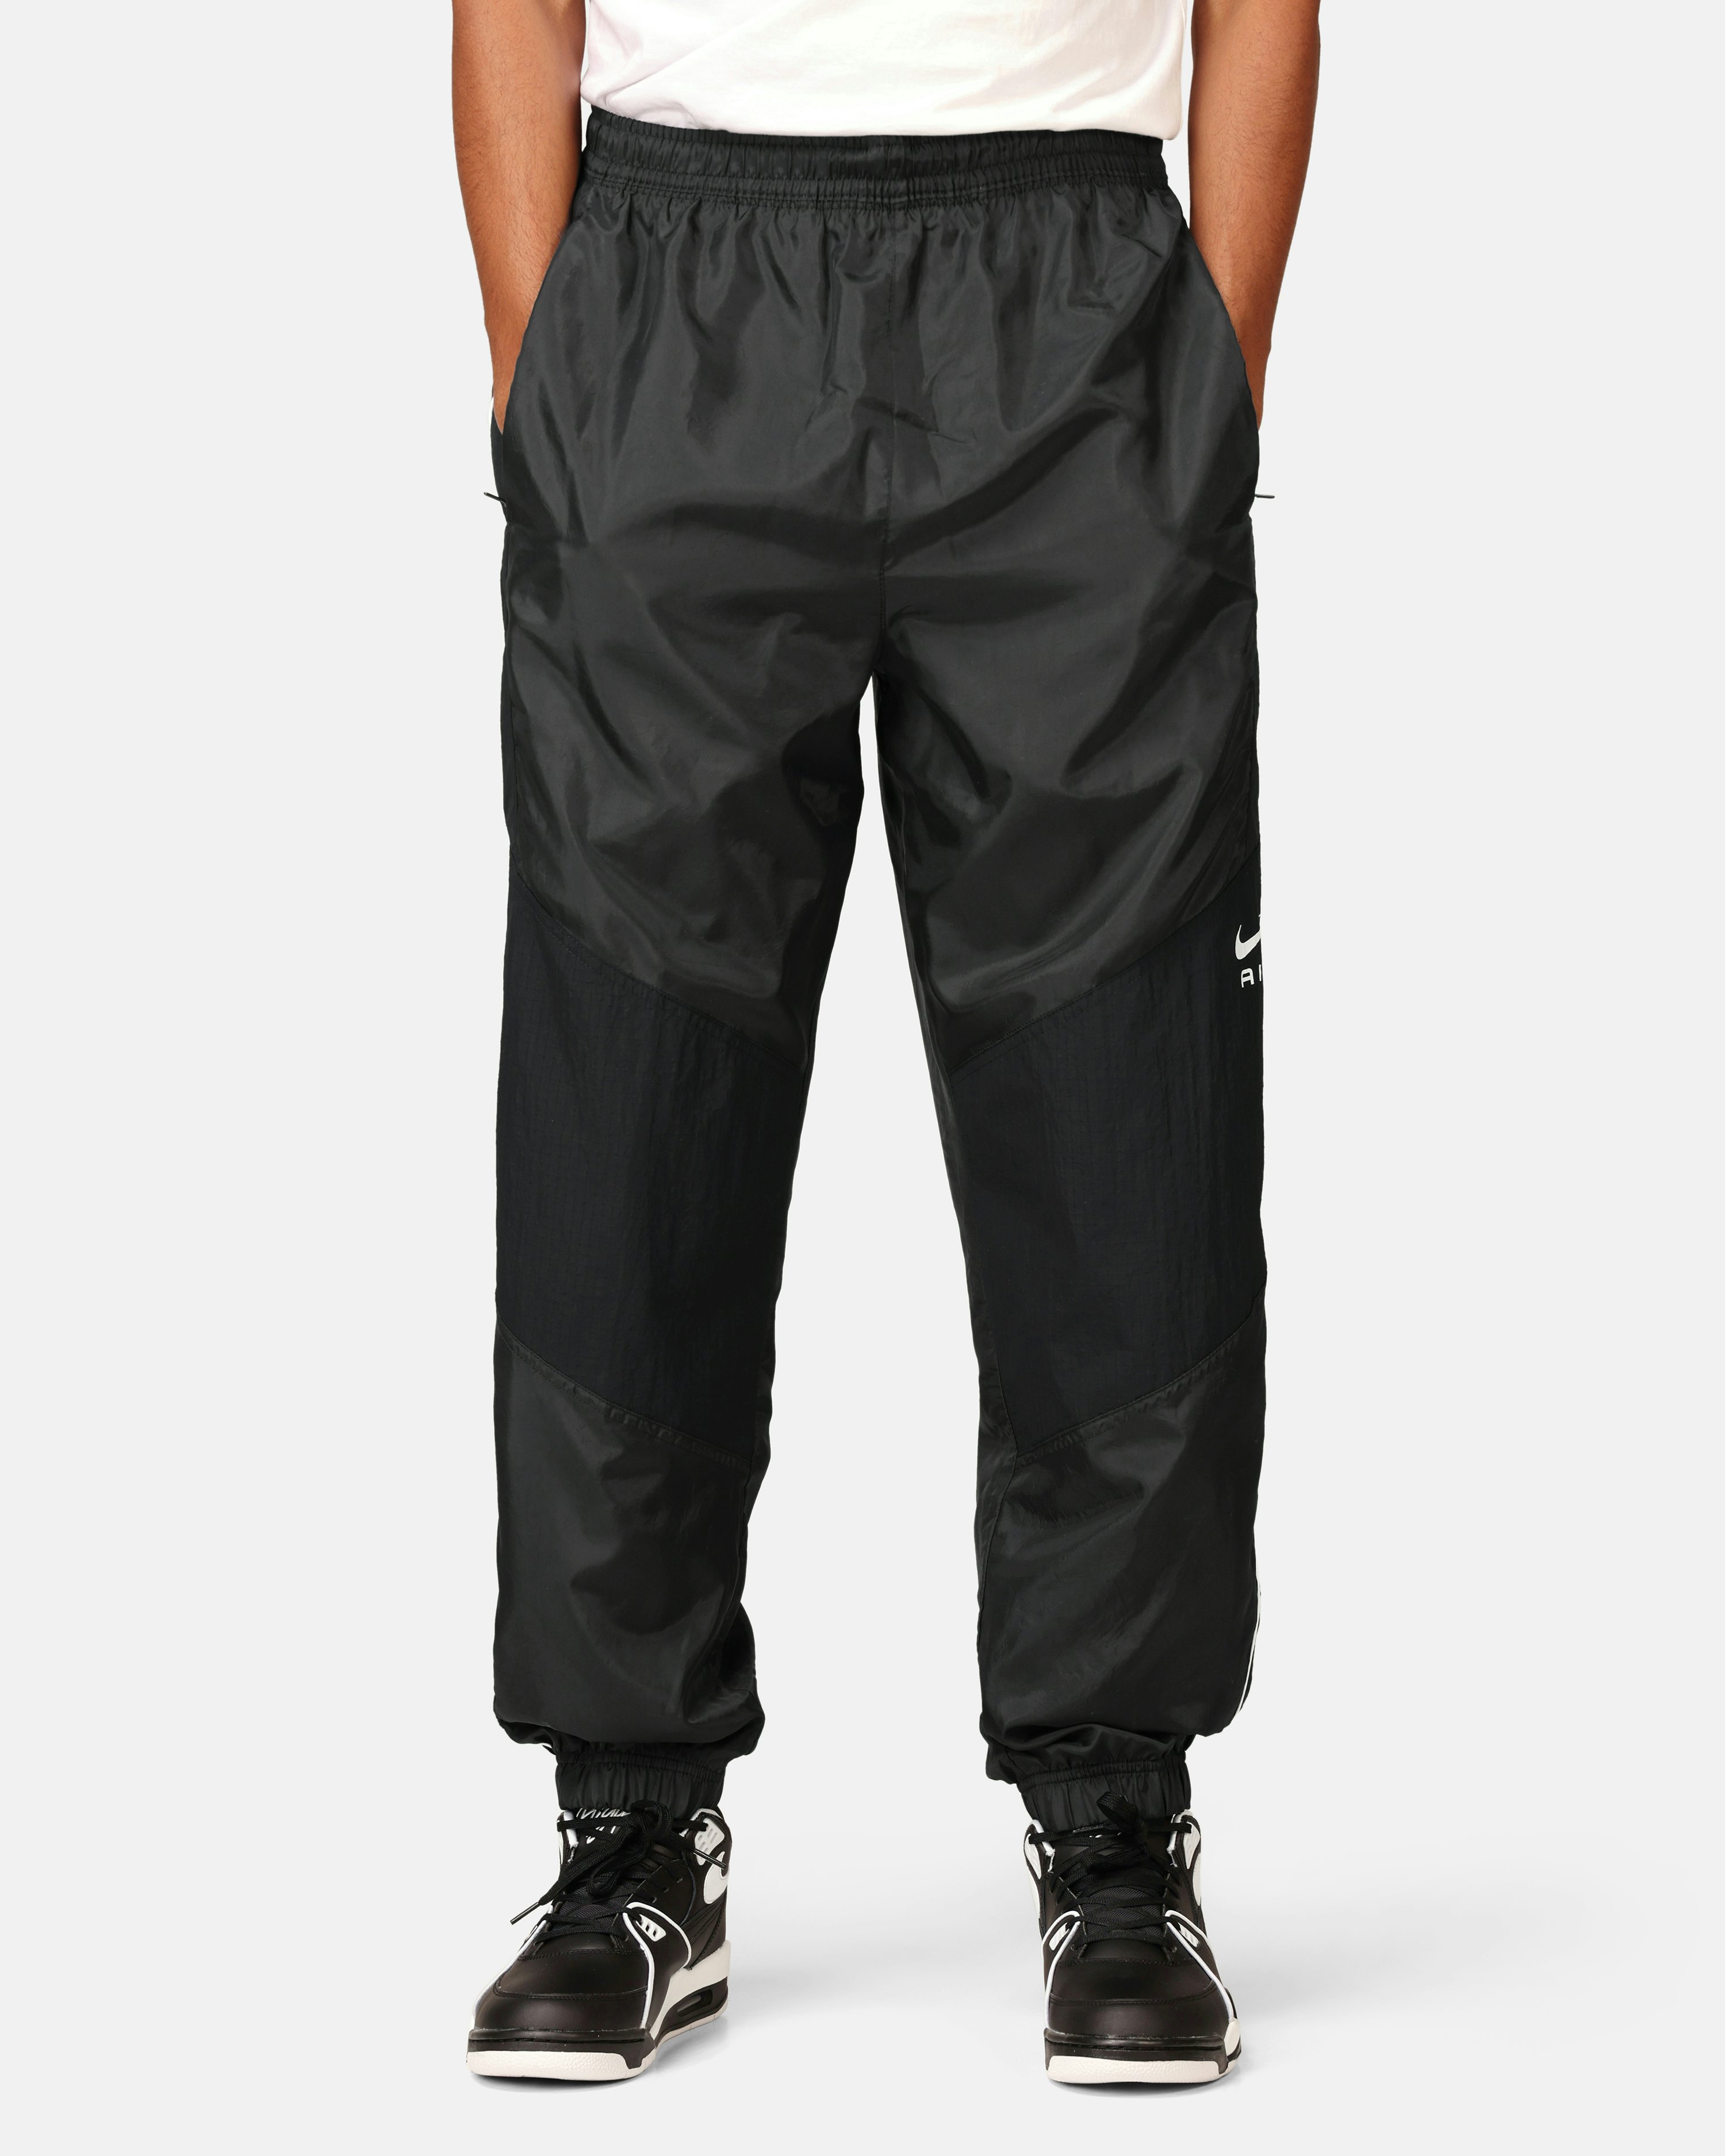 Nike Black Track Pants, Men